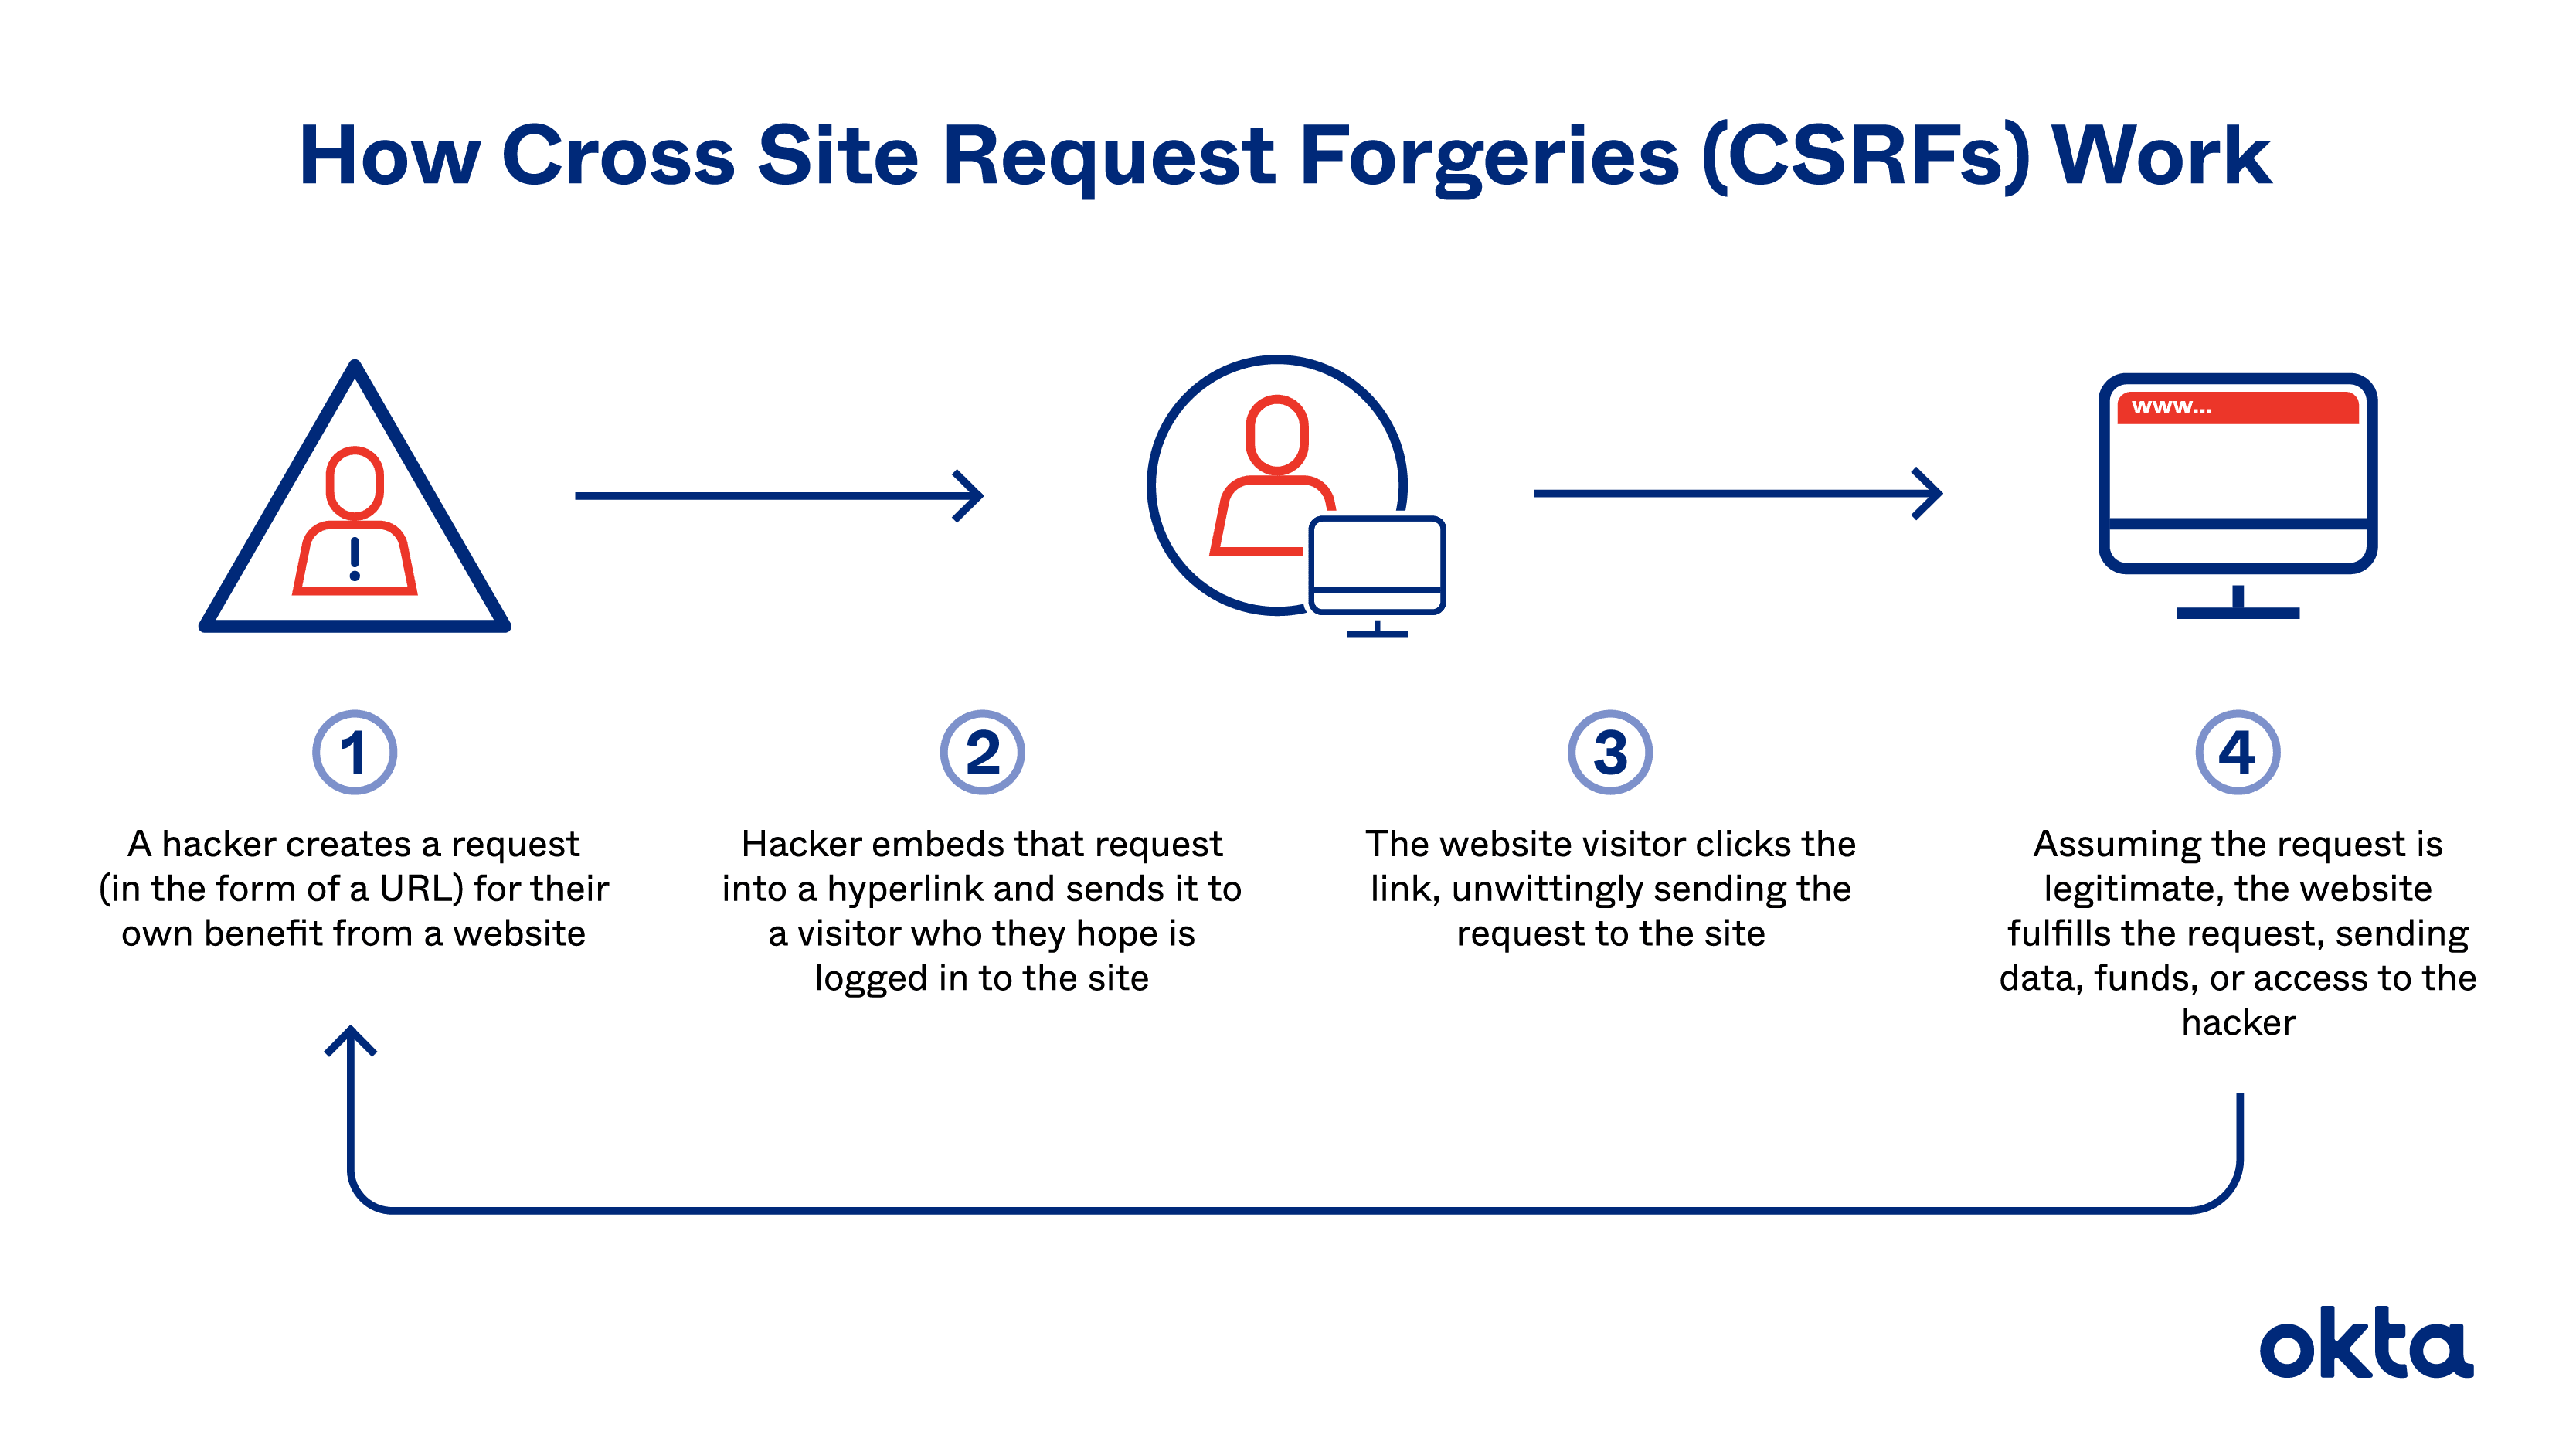 Een illustratie van hoe Cross Site Request Forgeries (CSRF's) werken.